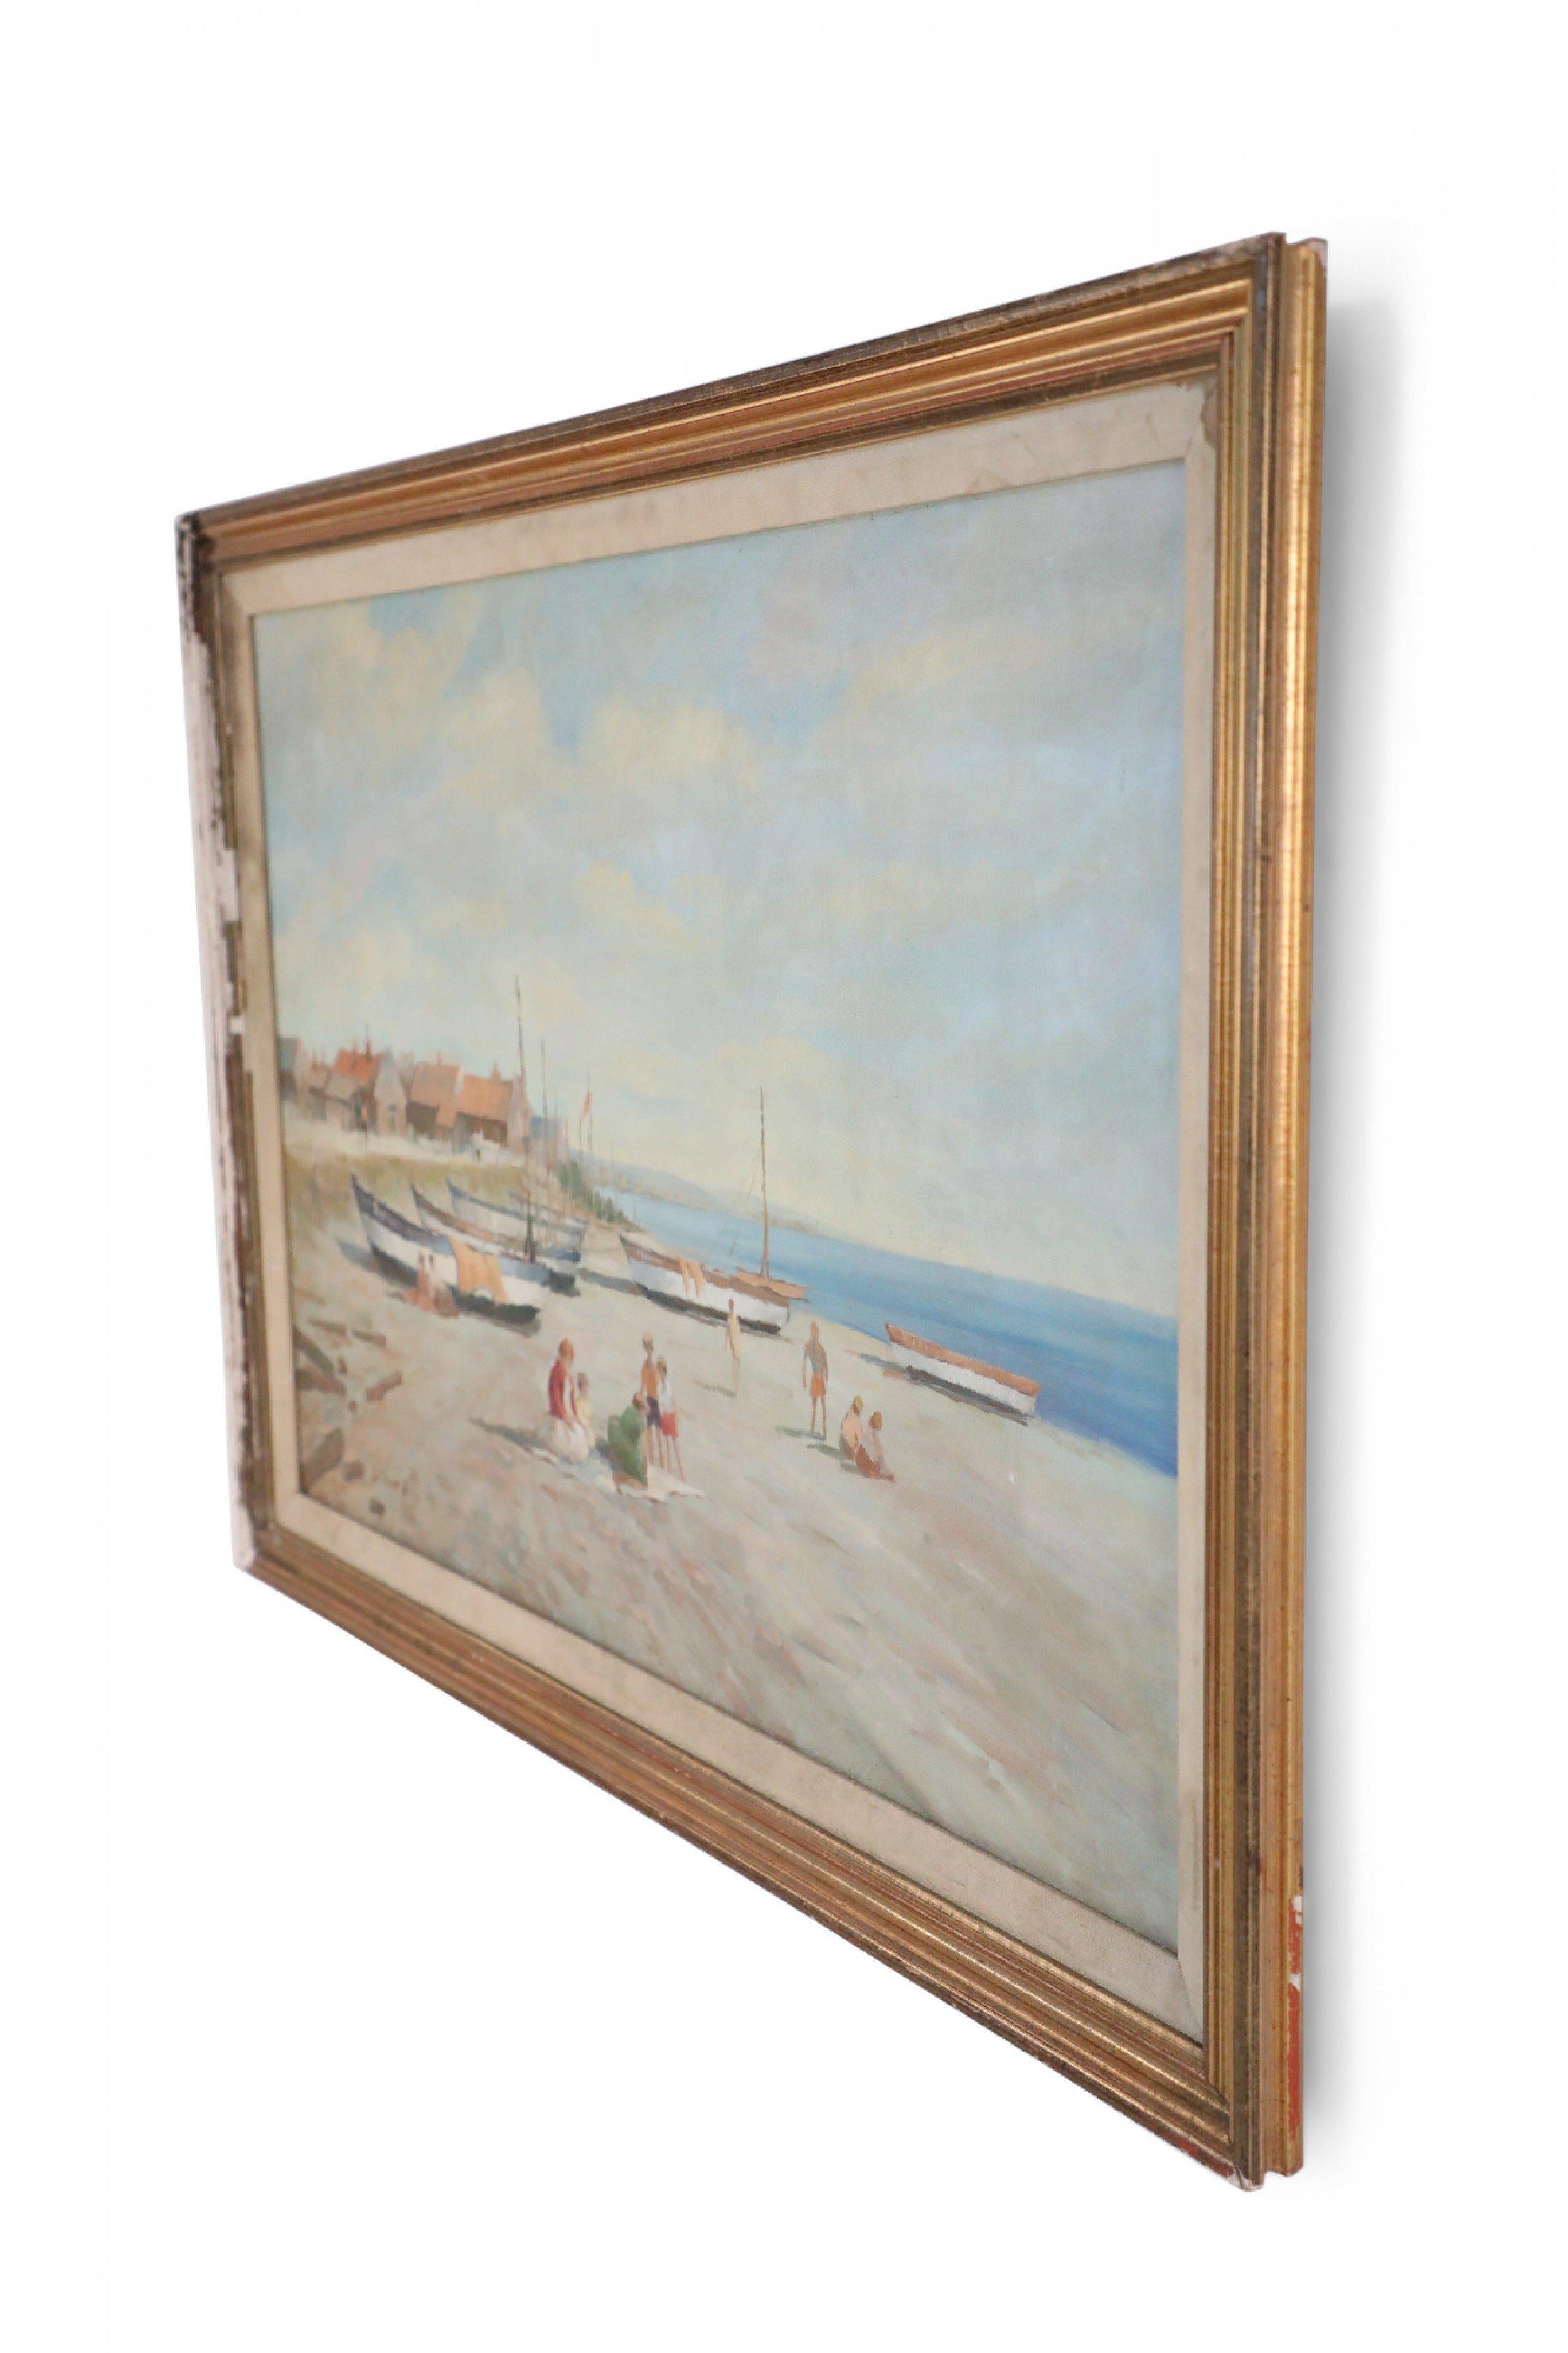 Peinture à l'huile d'époque (20e siècle) représentant des bateaux tirés sur le rivage avec des familles dans le sable, et un village aux toits rouges au loin, dans un cadre doré très usé avec une doublure en tissu.
 